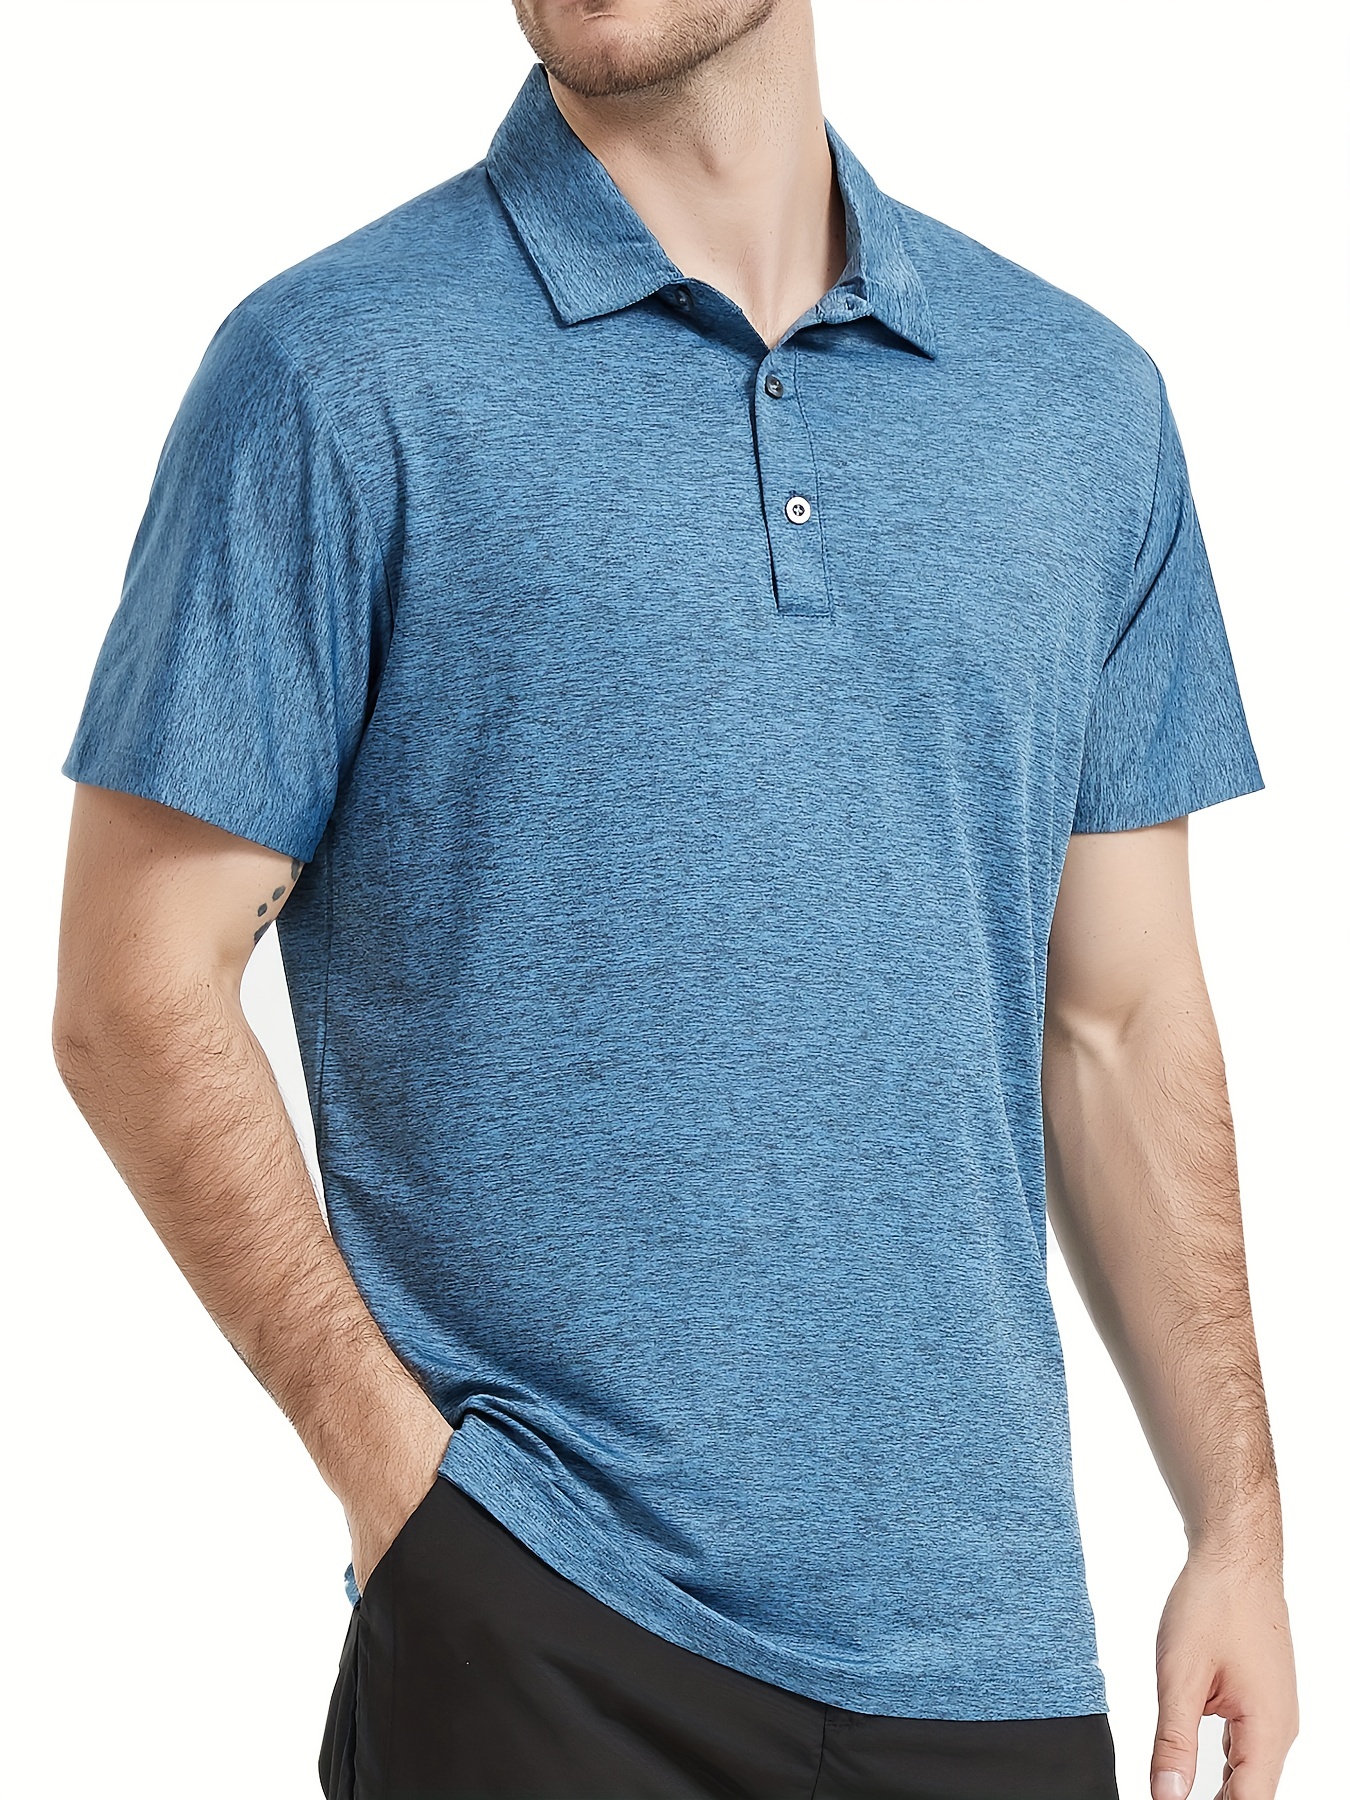 Fishing Shirt Men Long Sleeve Polo Jersey Polo Work Shirts For Men Casual T  Shirt Solid Golf Polo Shirt Quick Dry Shirt Khaki